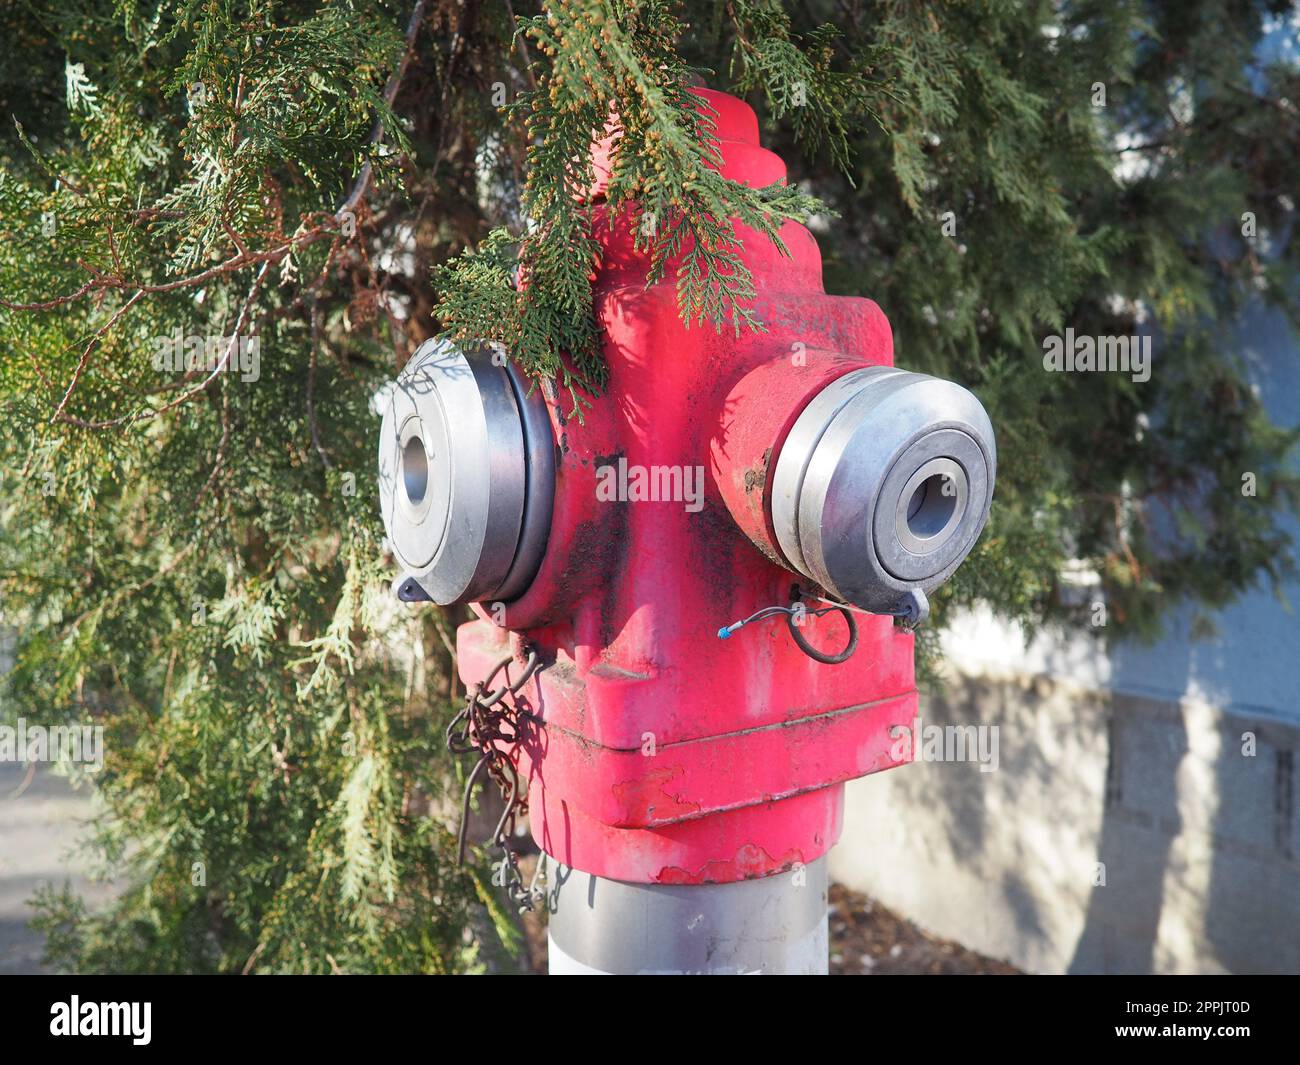 Hydrant Aussengeräte zum Löschen von Bränden in städtischen Umgebungen. Metall in kars-Farbe lackiert. Zwei Armaturen für Feuerlöschschläuche. Thuja bleibt im Hintergrund Stockfoto